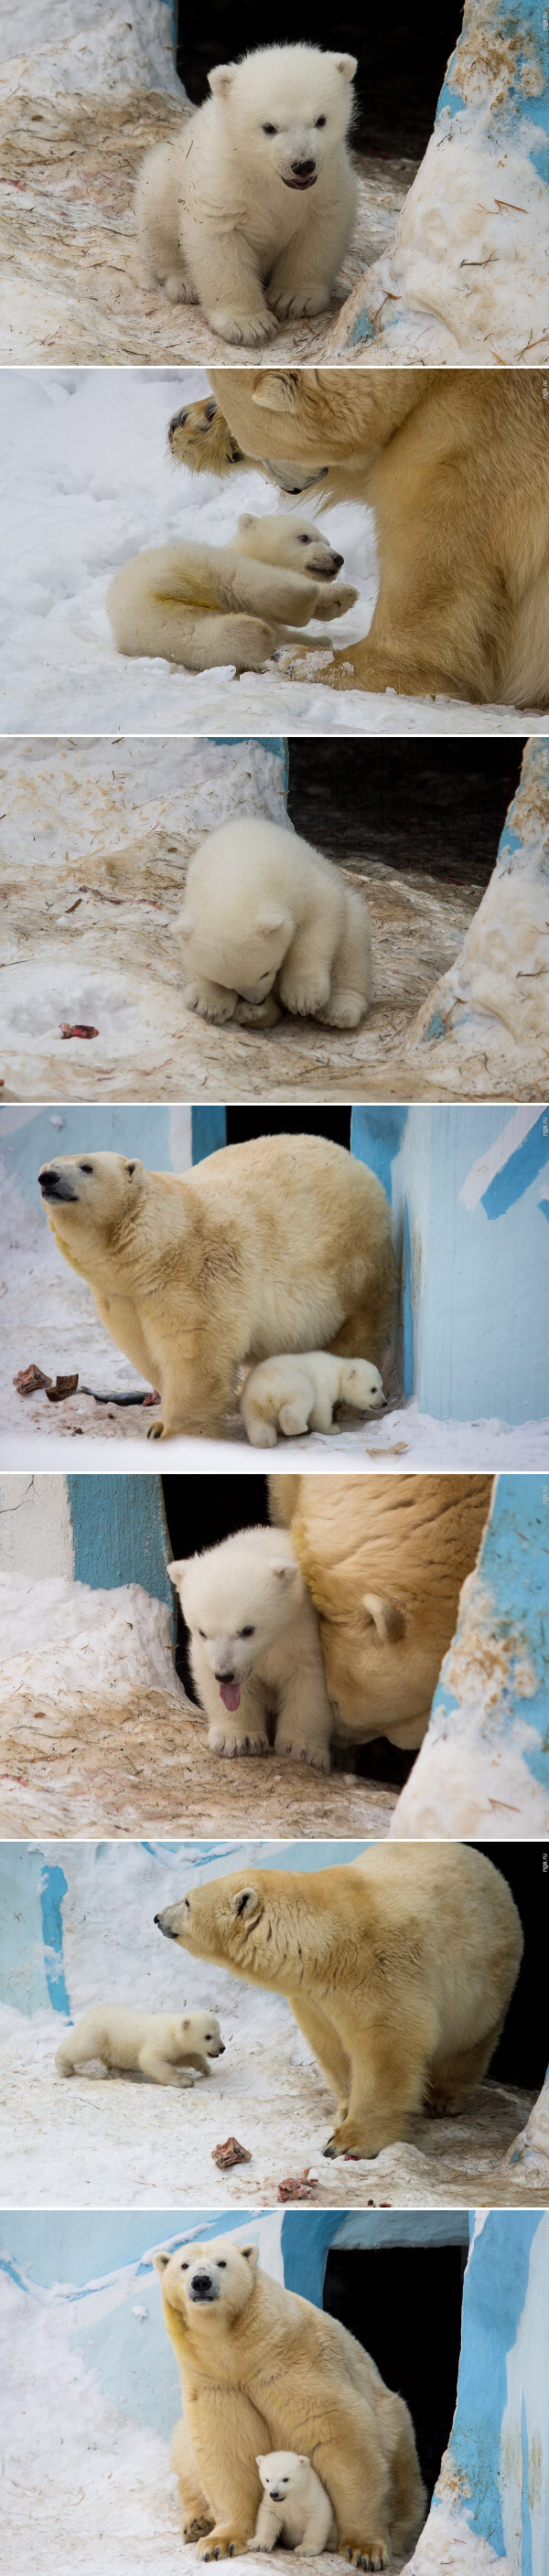 Медведица Герда из Новосибирского зоопарка вывела своего малыша на первую прогулку